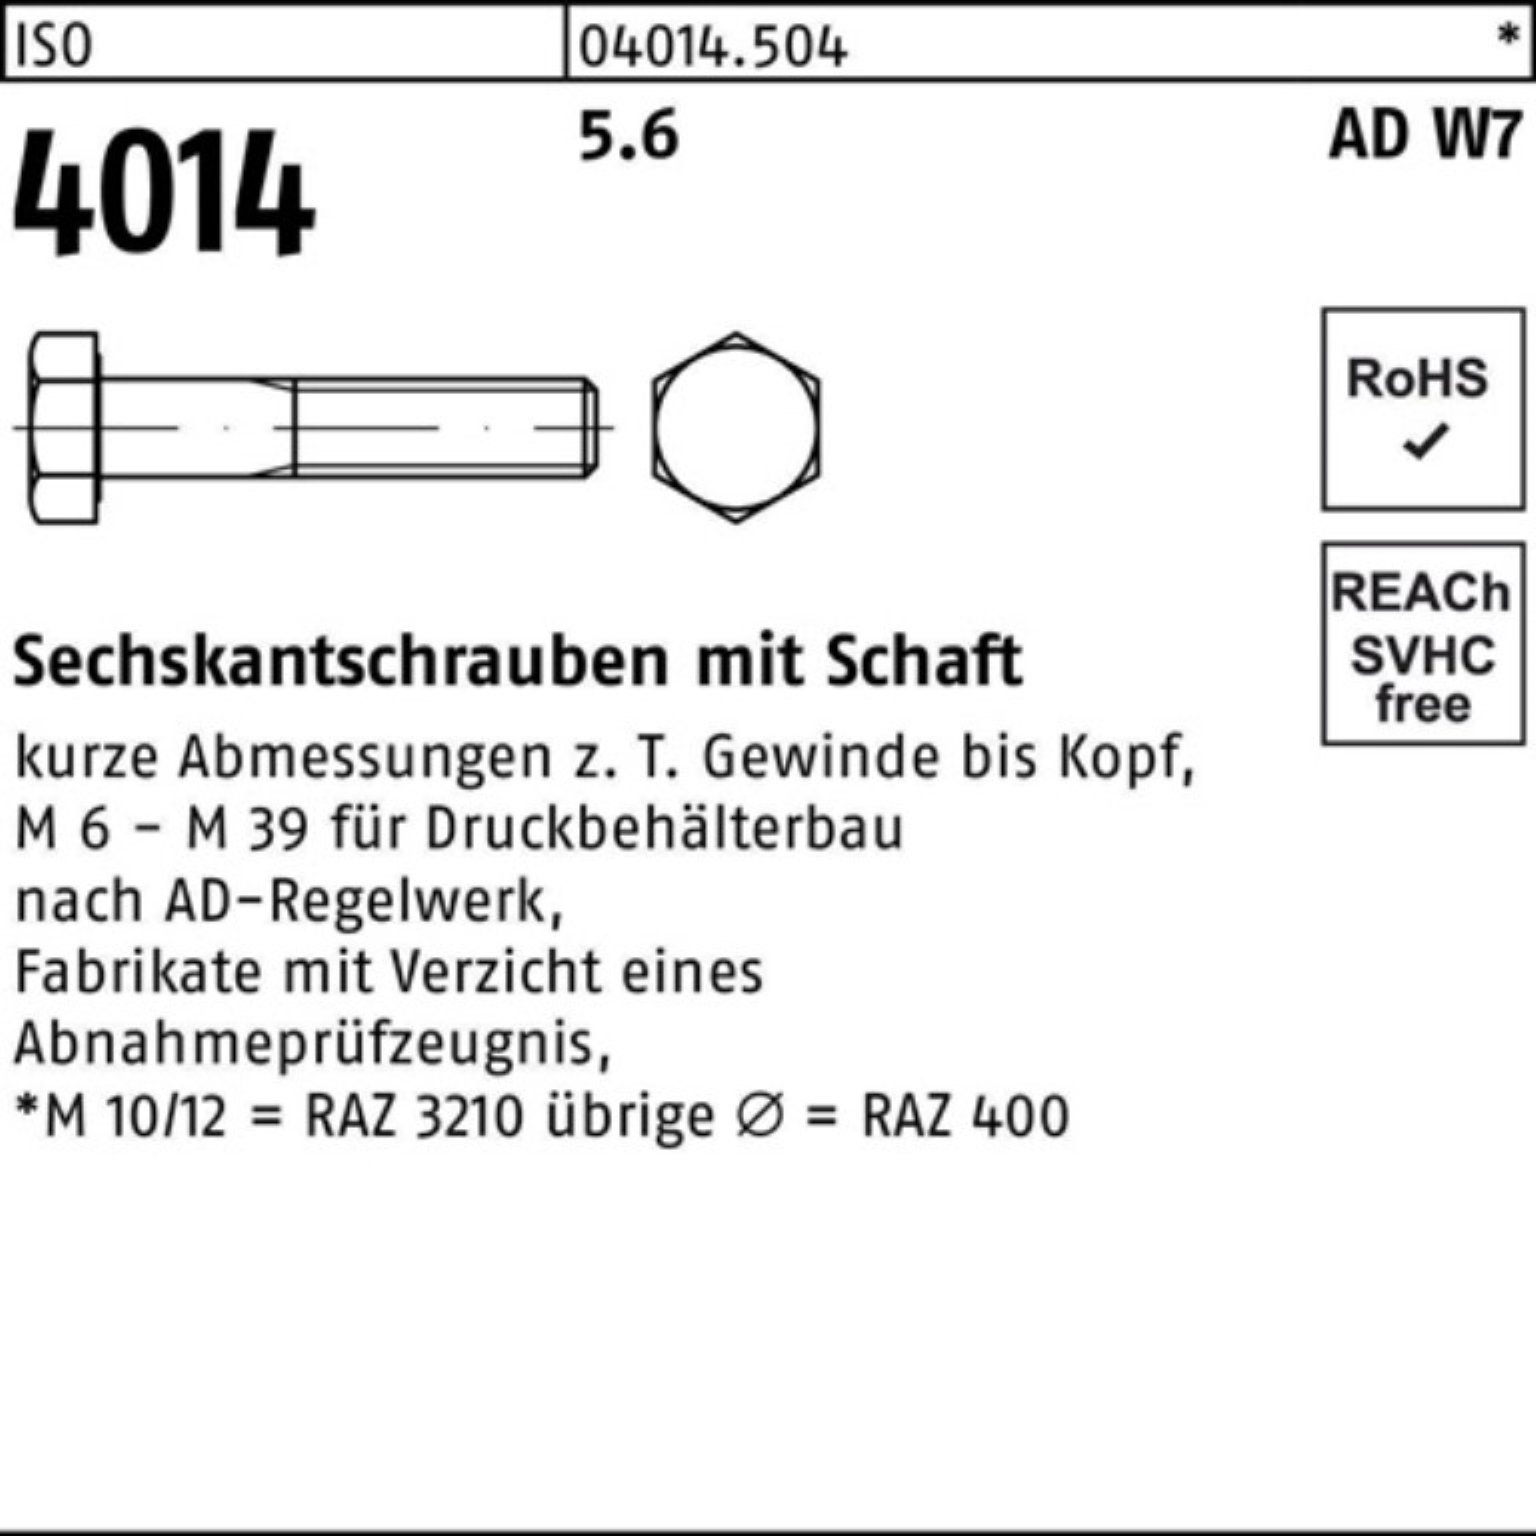 Sechskantschraube 4014 Sechskantschraube 1 Bufab 100er 180 Stück M24x Pack Schaft W7 5.6 ISO